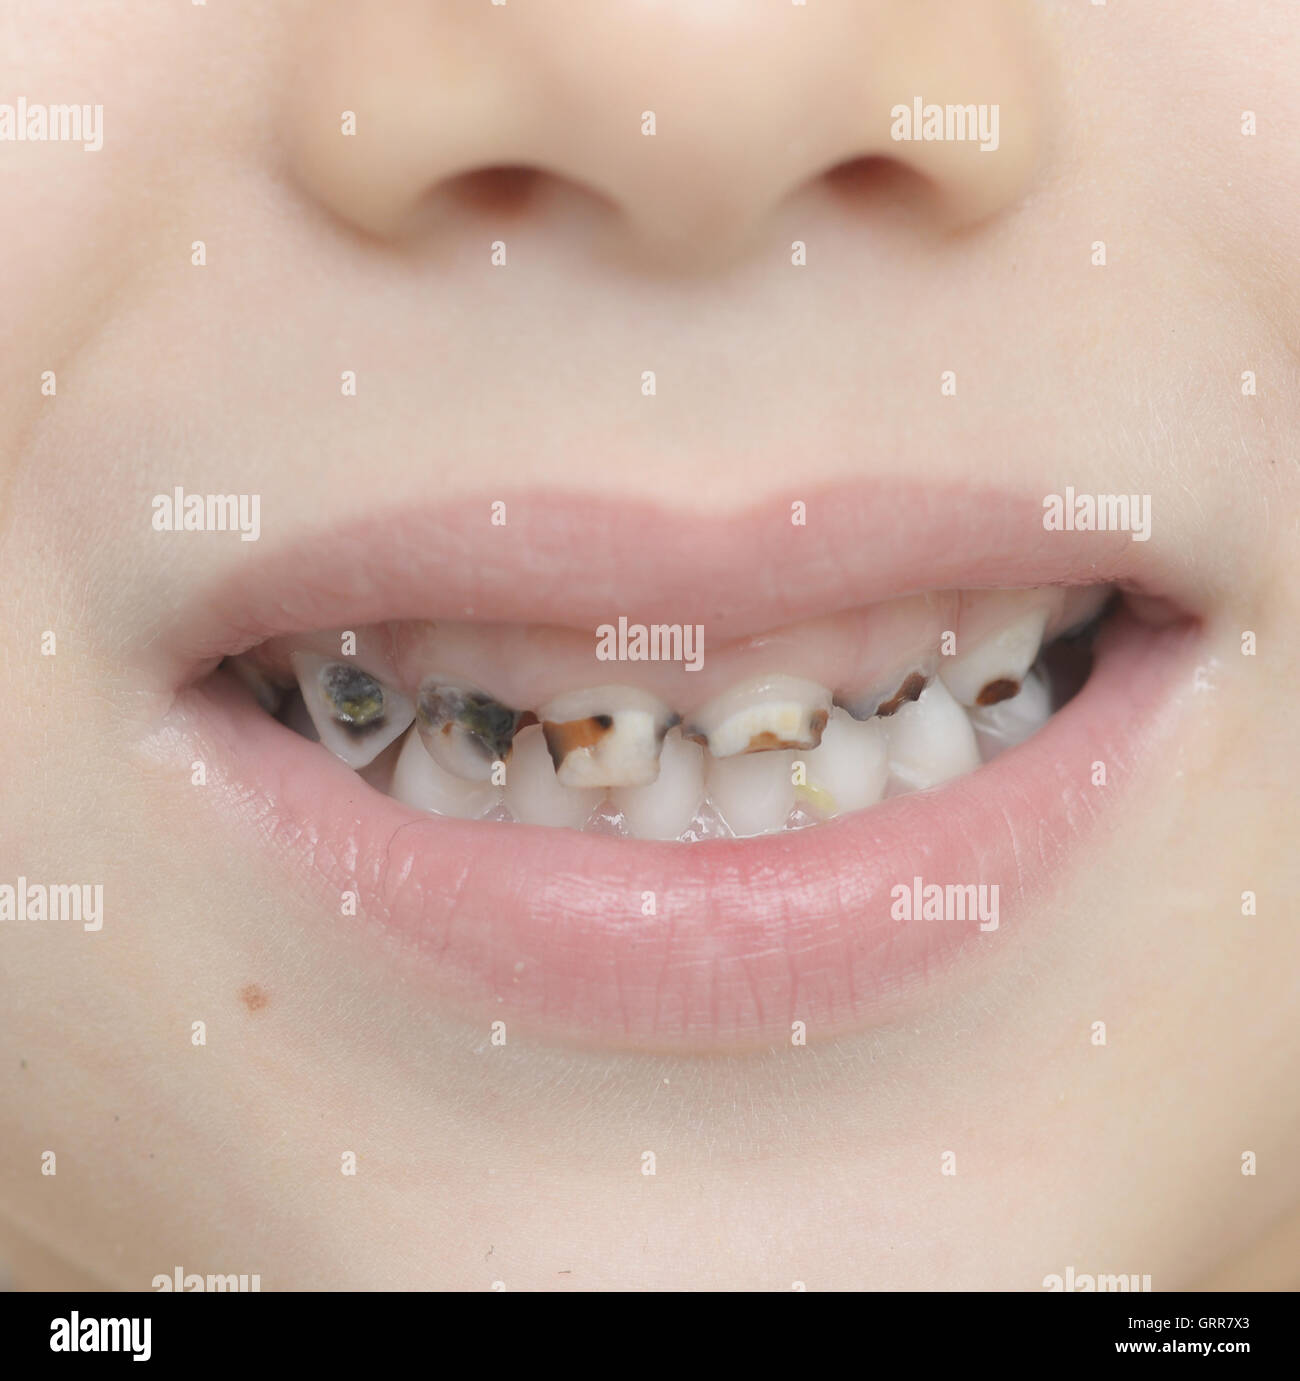 Rapprochee Sur Les Dents De Bebe Avec La Carie Dentaire Photo Stock Alamy